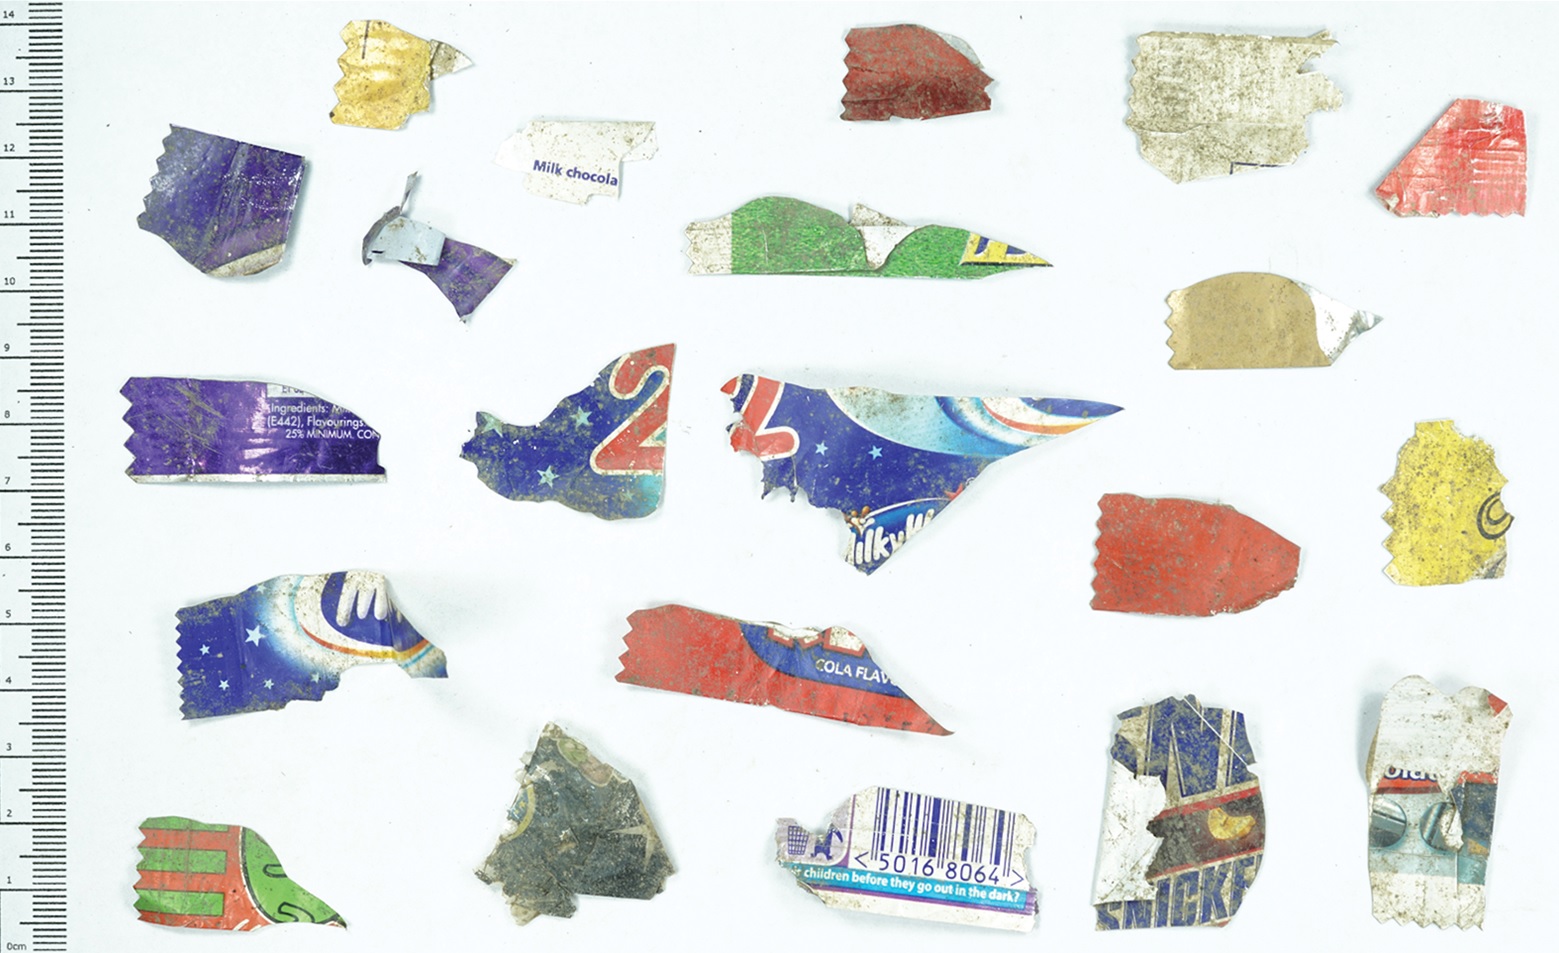 Quase 3 mil peças de plástico são encontradas em sítio arqueológico da Idade do Ferro - 2